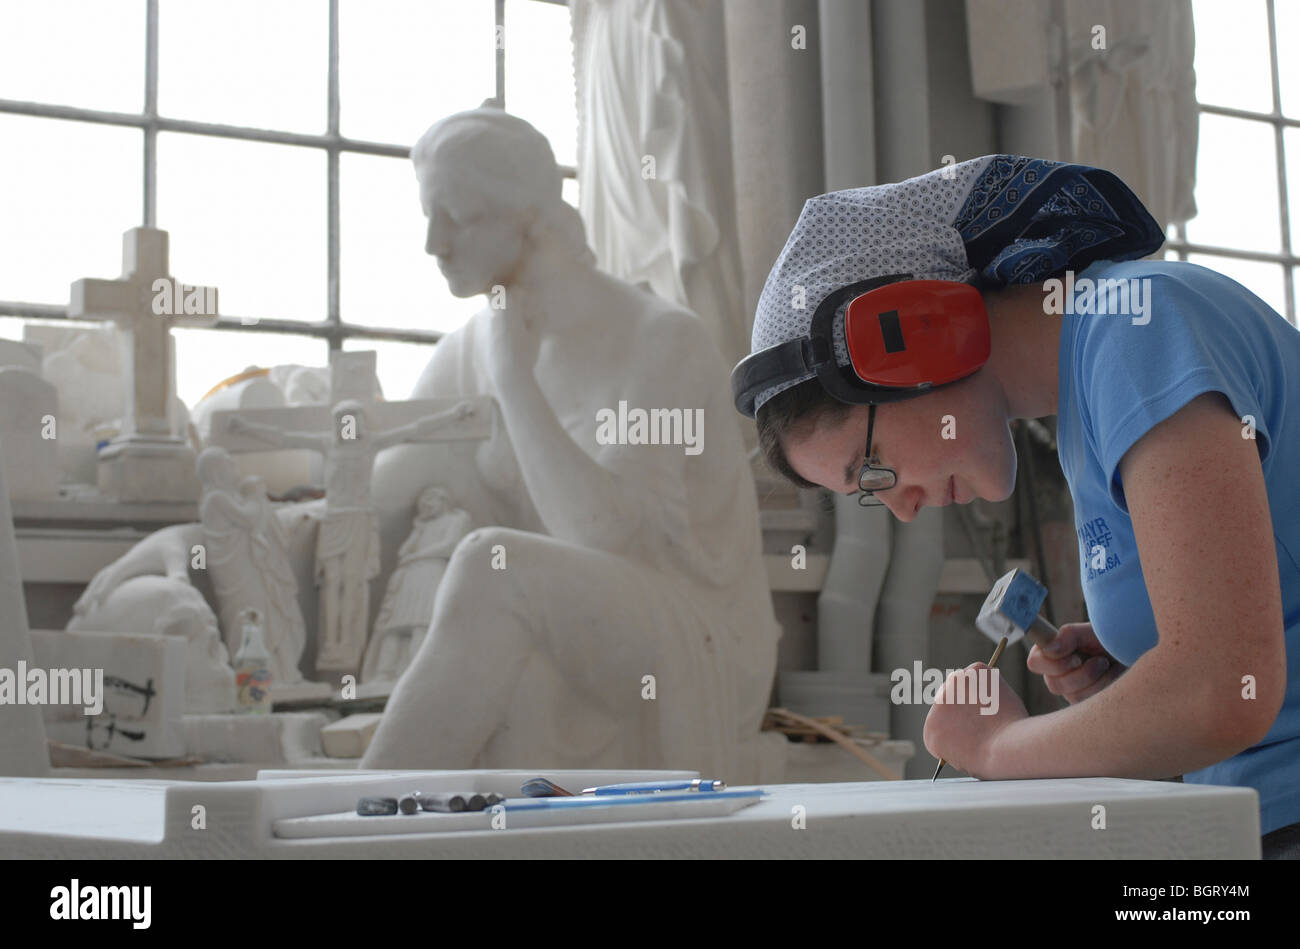 Atelier de sculpture à Lasa, Italie Banque D'Images